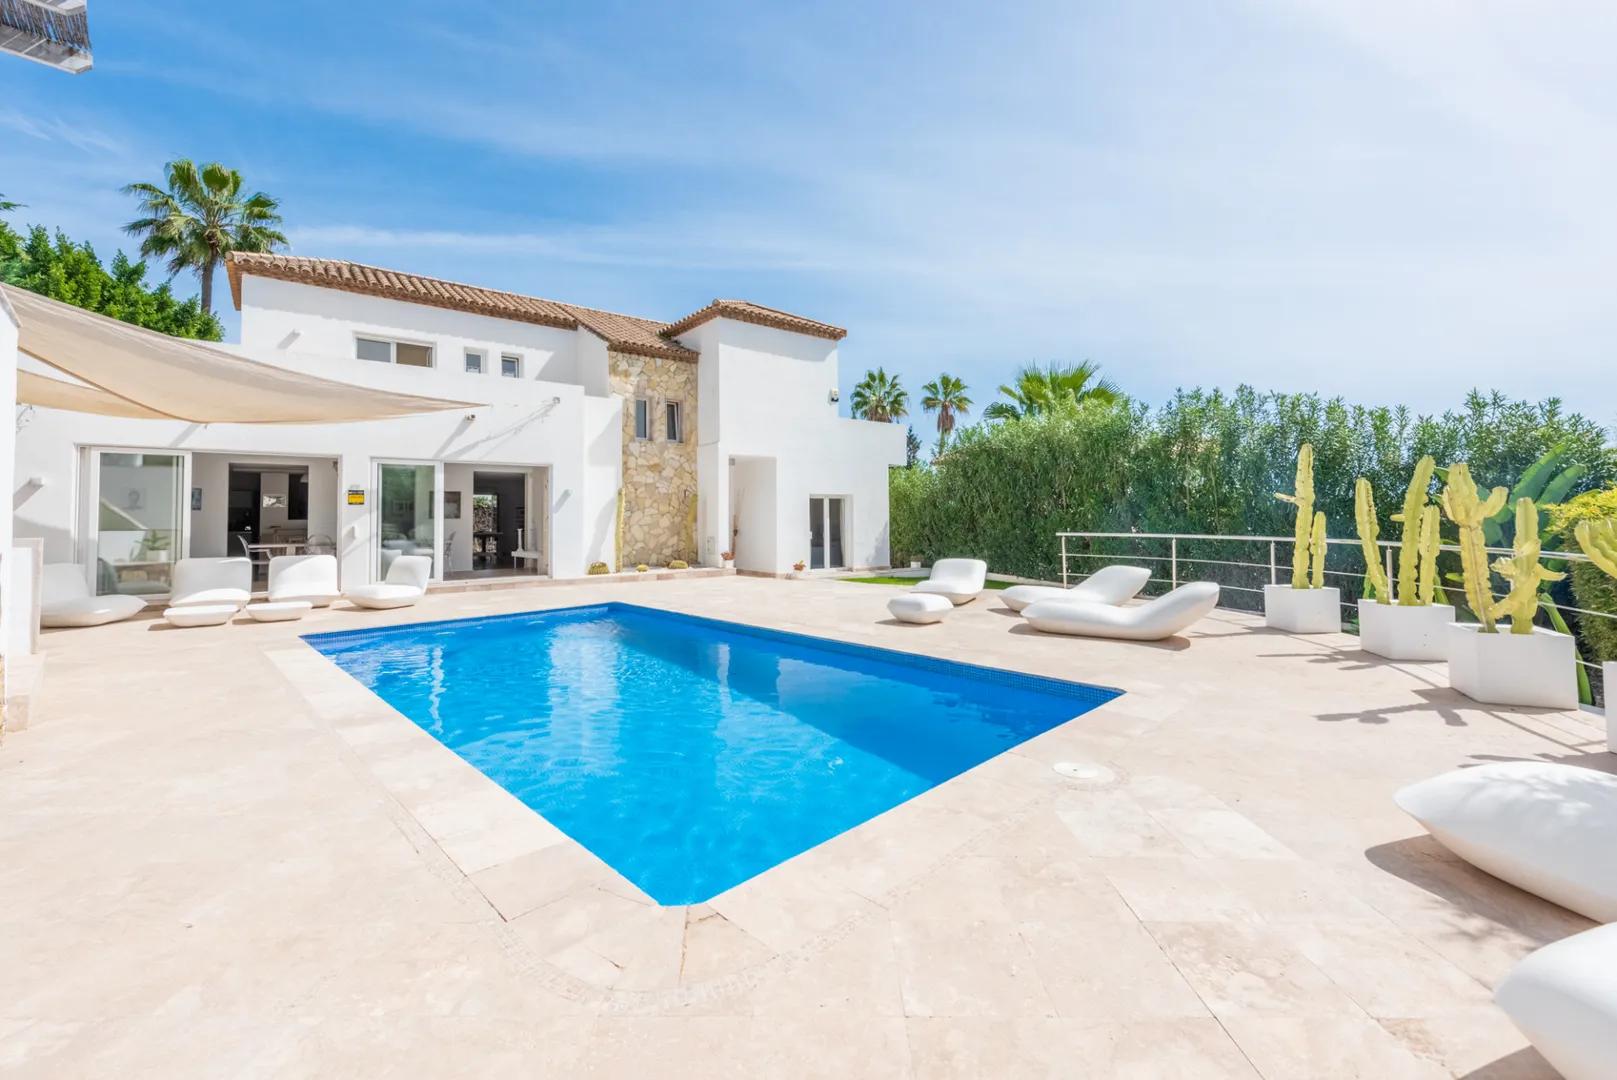 Casa elegante en comunidad cerrada de Nueva Andalucía con piscina y garaje